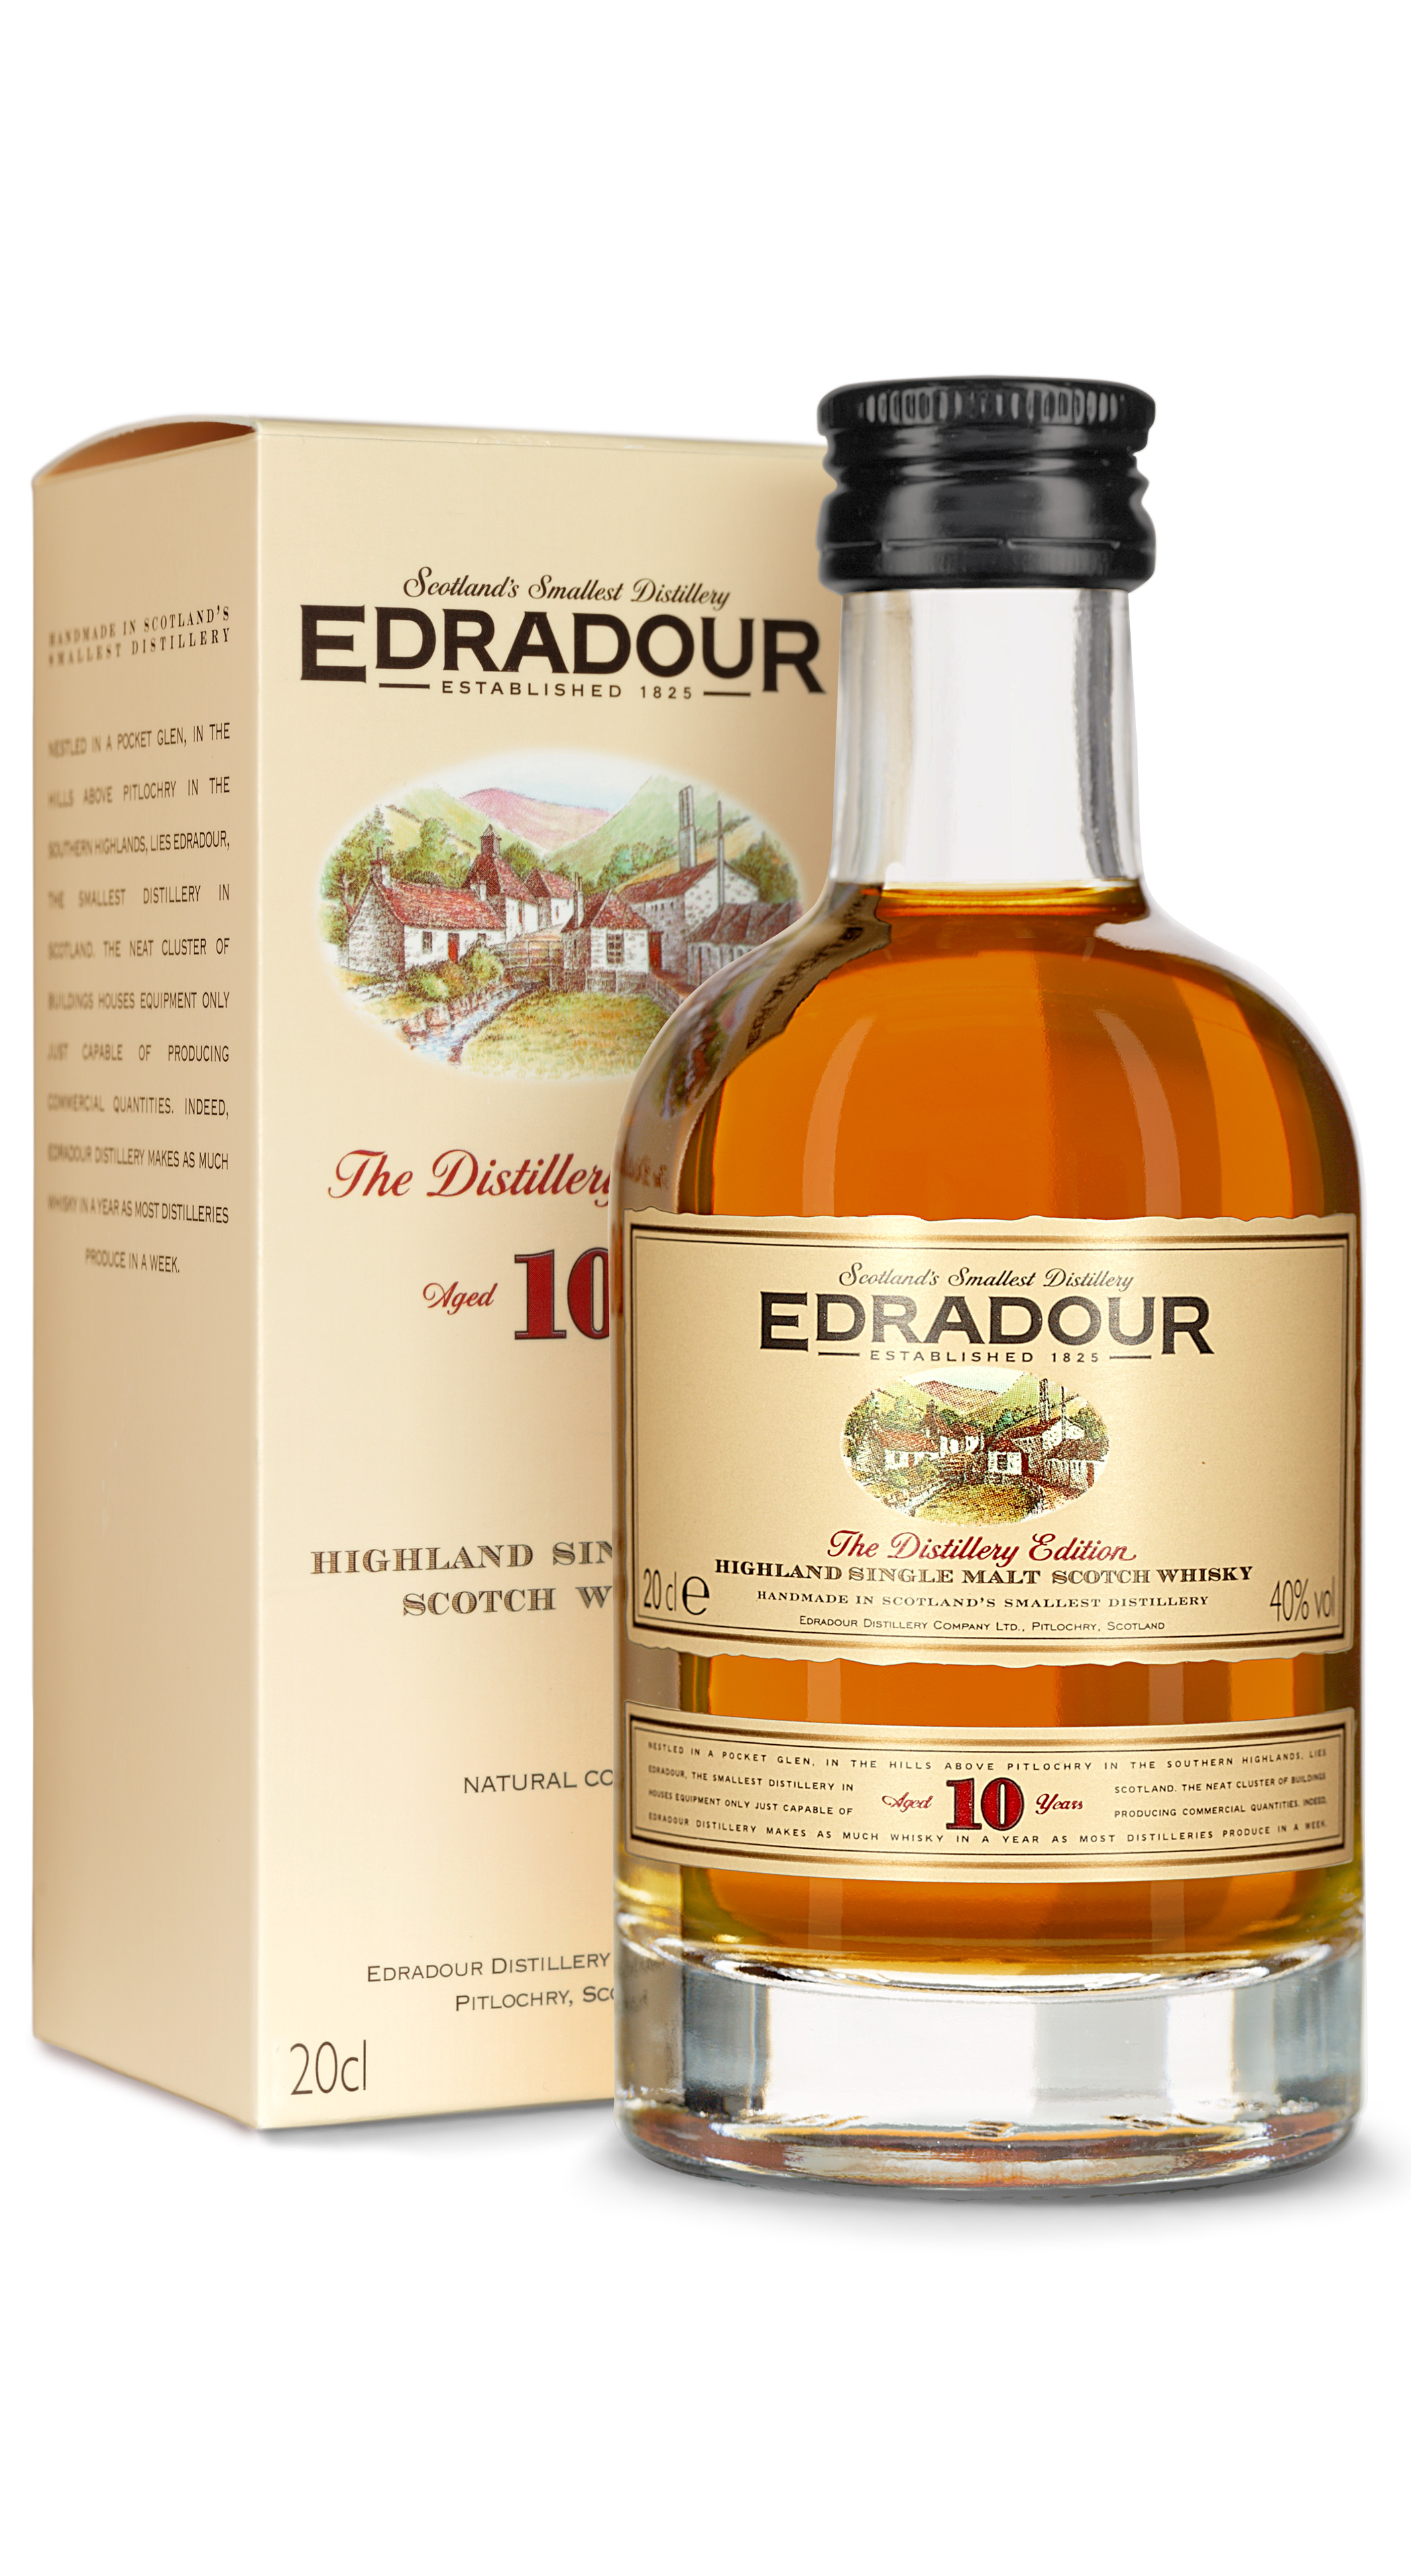 Edradour 10 Jahre Highland Single für Dr. l und Malt 18,90 Dr. Kochan bei 0,2 Schnapskultur € Fachgeschäft Kochan | Onlineshop kaufen Schnapskultur Whisky